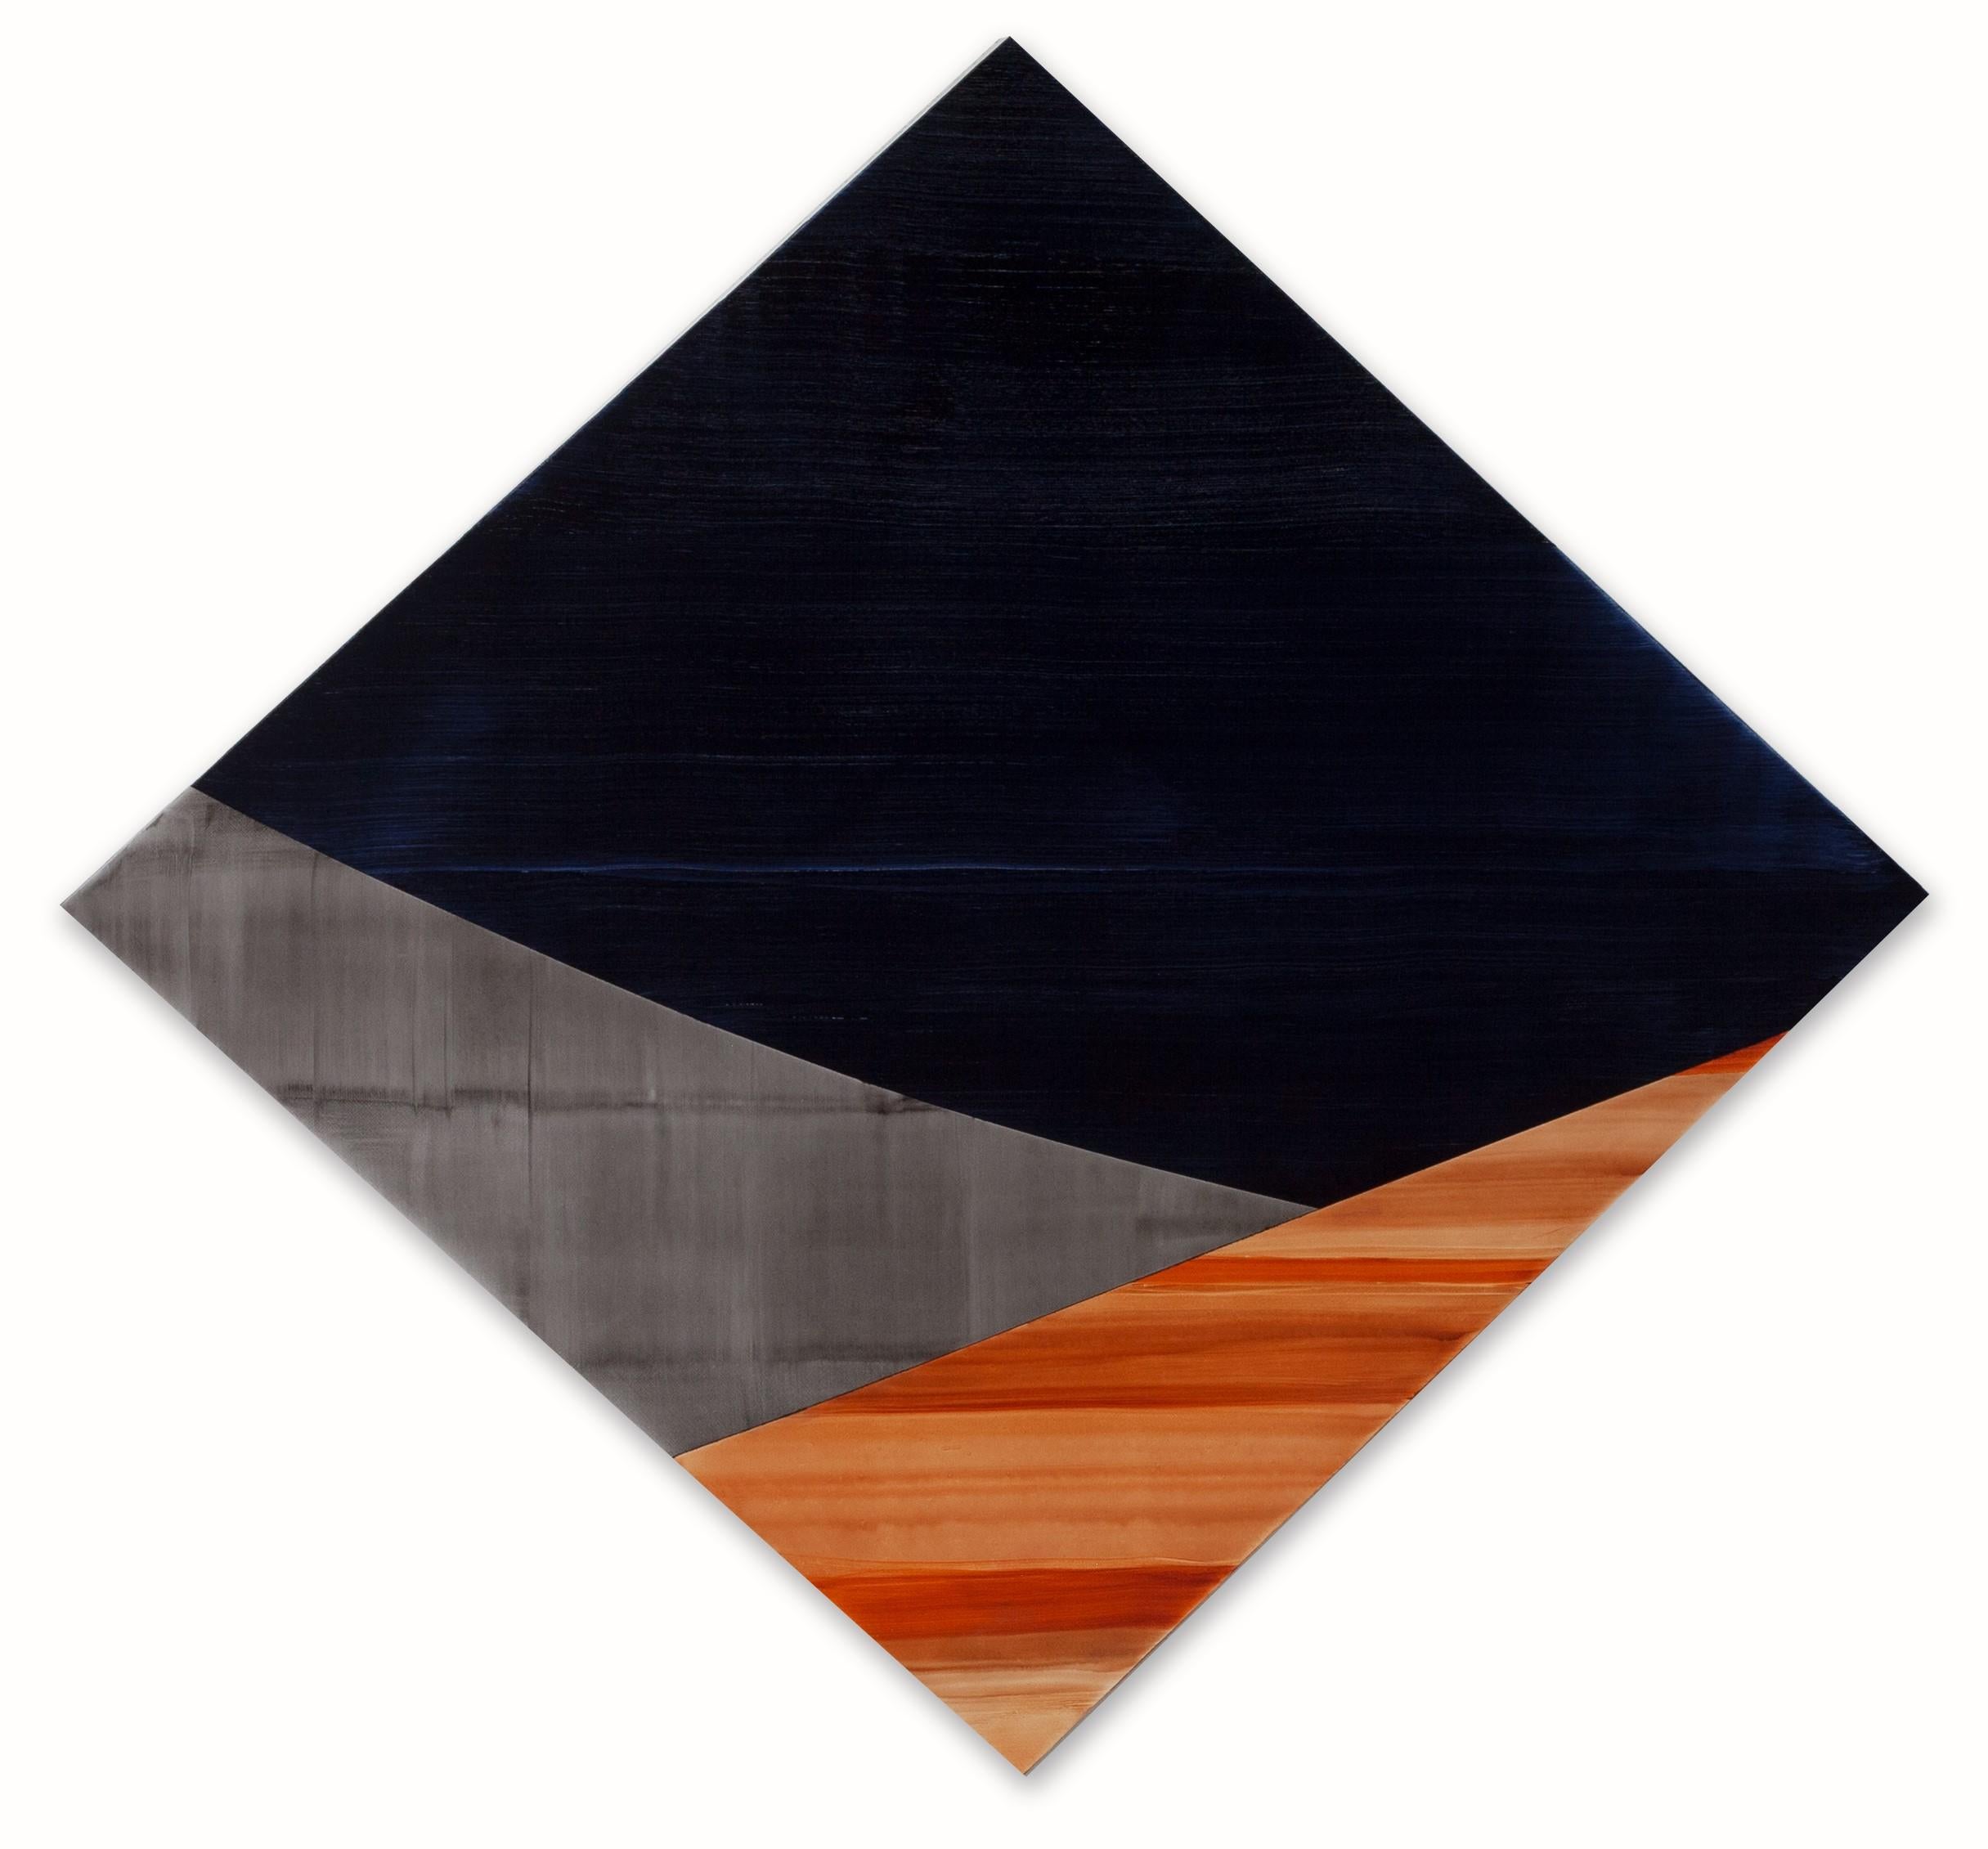  Geometrisches, abstraktes, mehrfarbiges, rautenförmiges Gemälde in Öl auf Leinwand